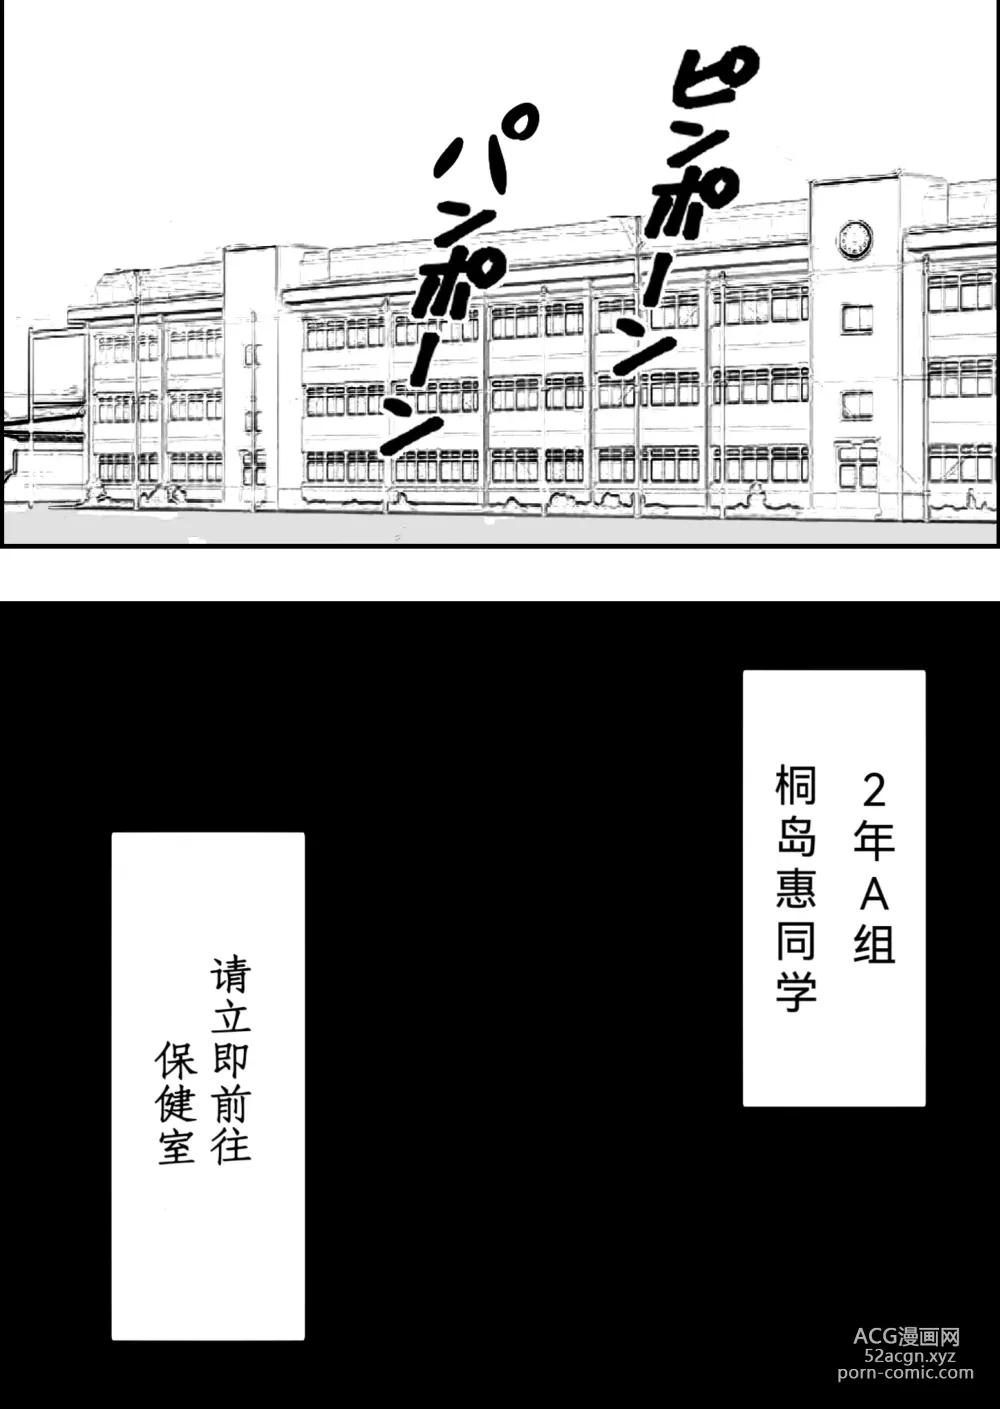 Page 2 of doujinshi Saimin Kenkou Shindan